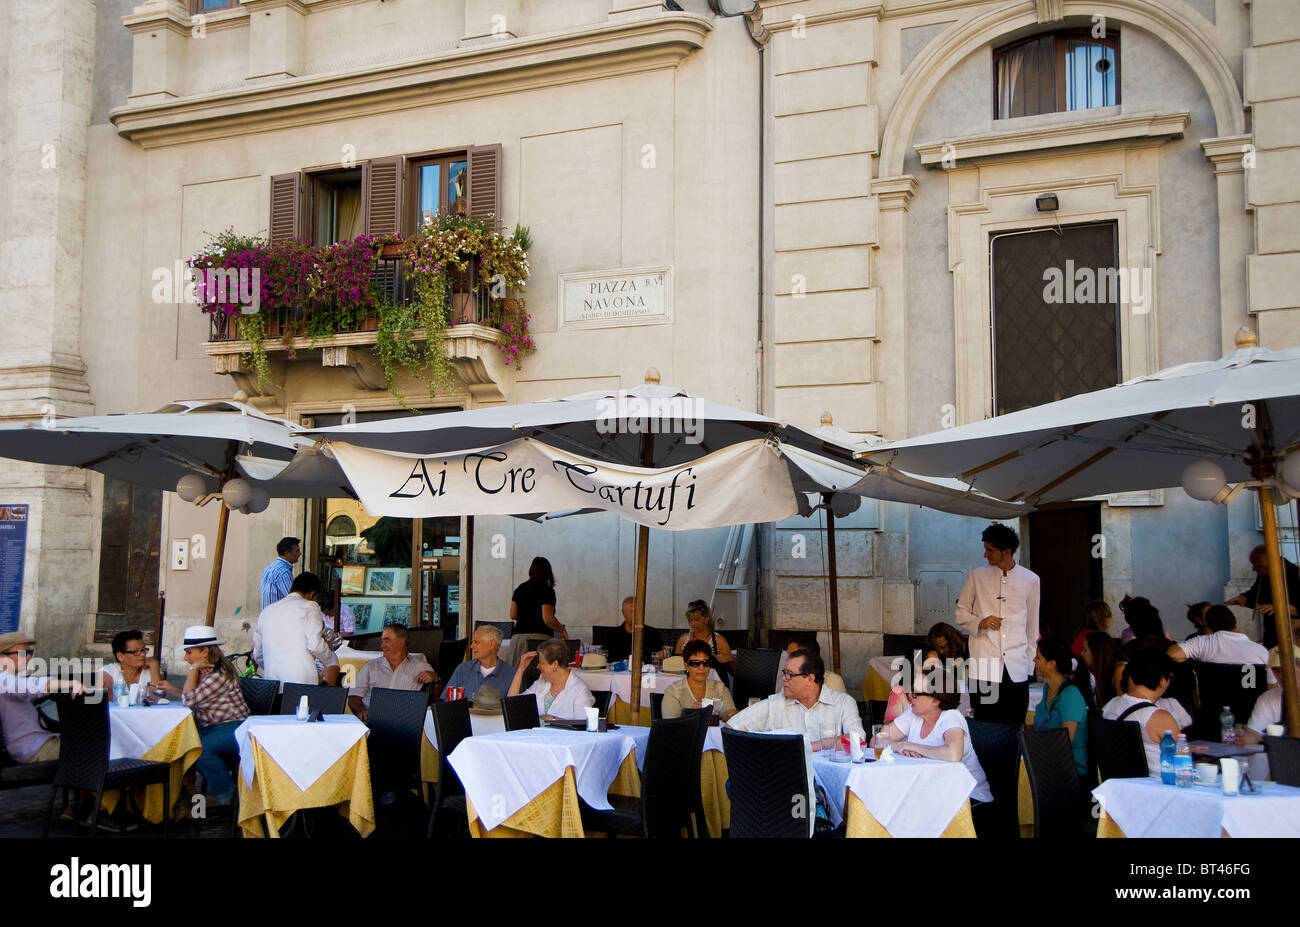 Cafe Ai tre Tartufi, in Piazza Navona, Rome, Italy Stock Photo